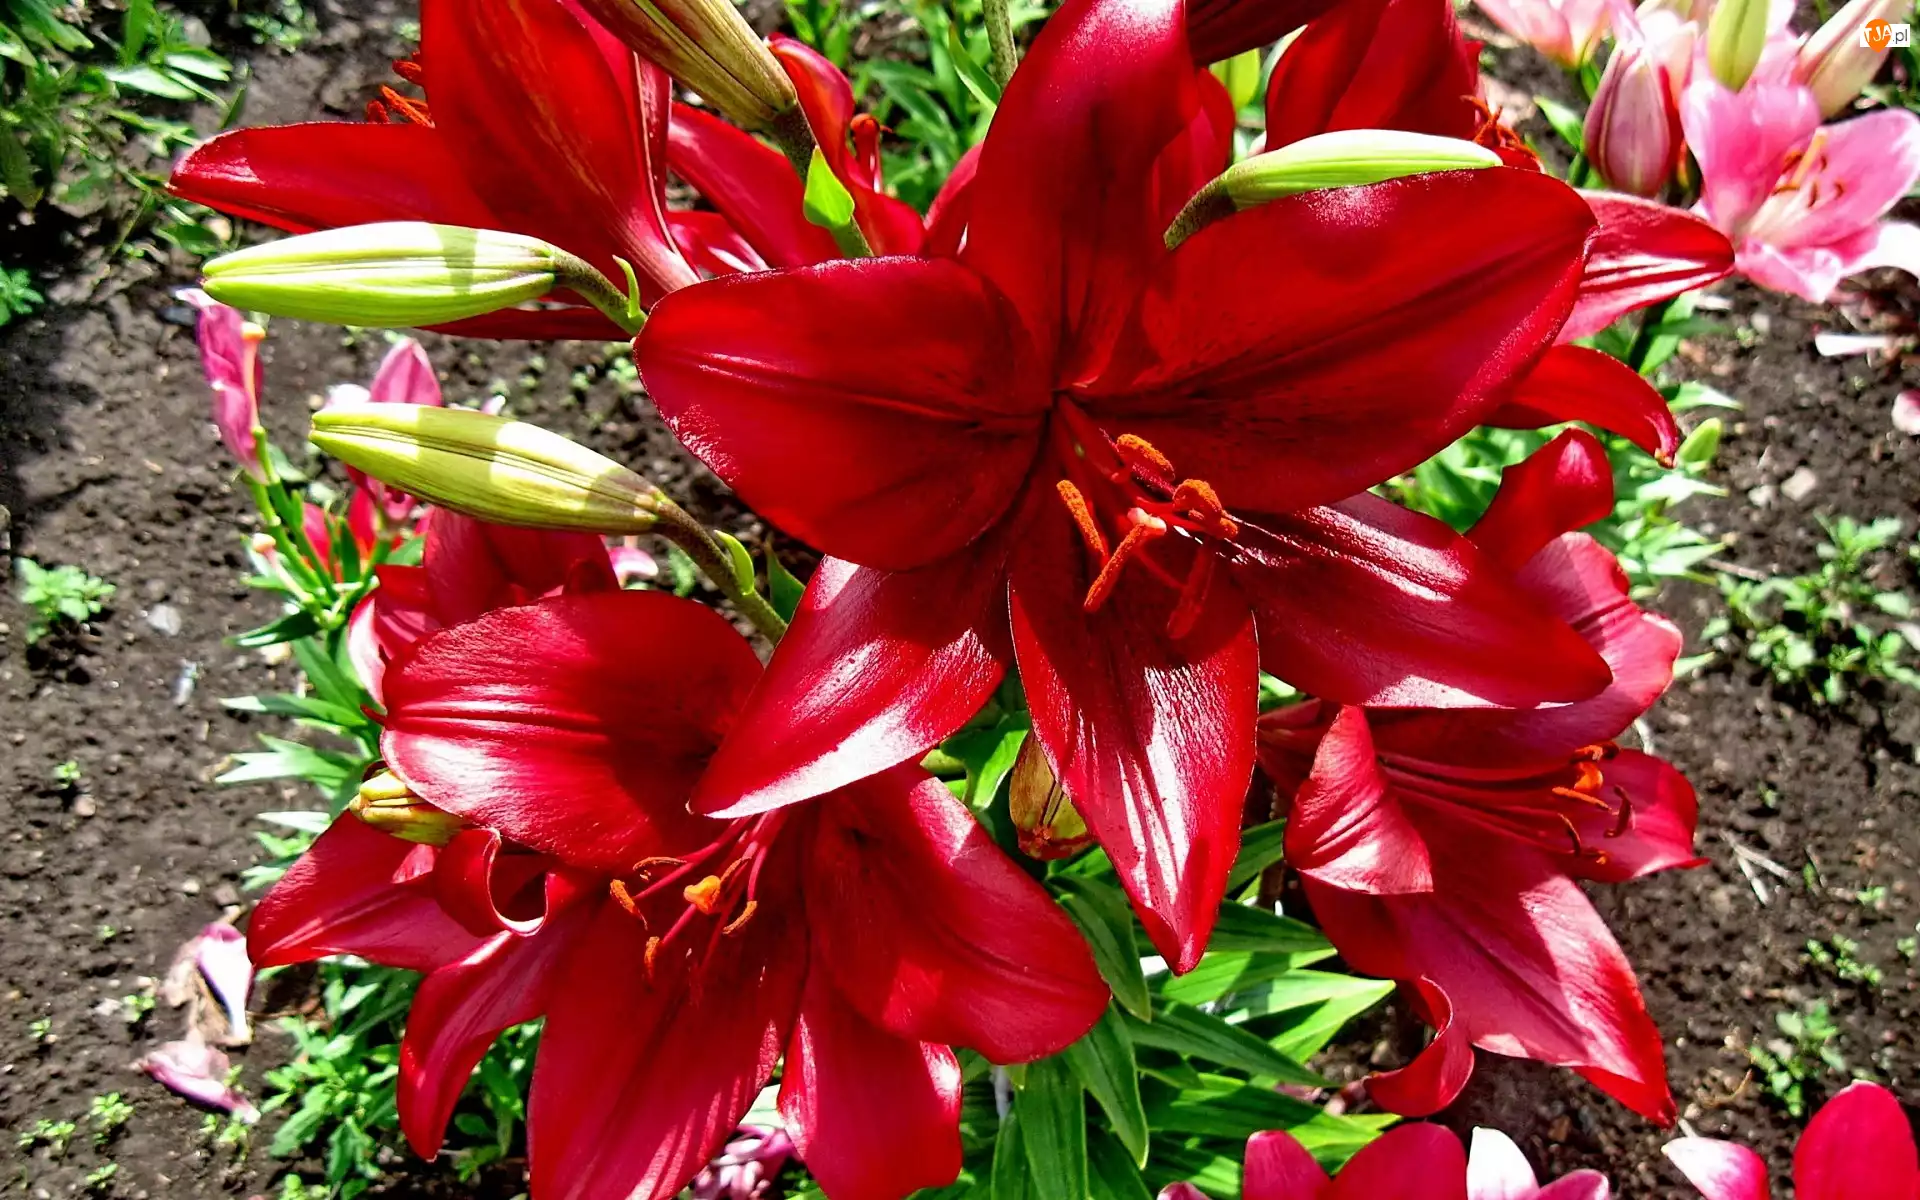 Lilie, Kwiaty, Czerwone